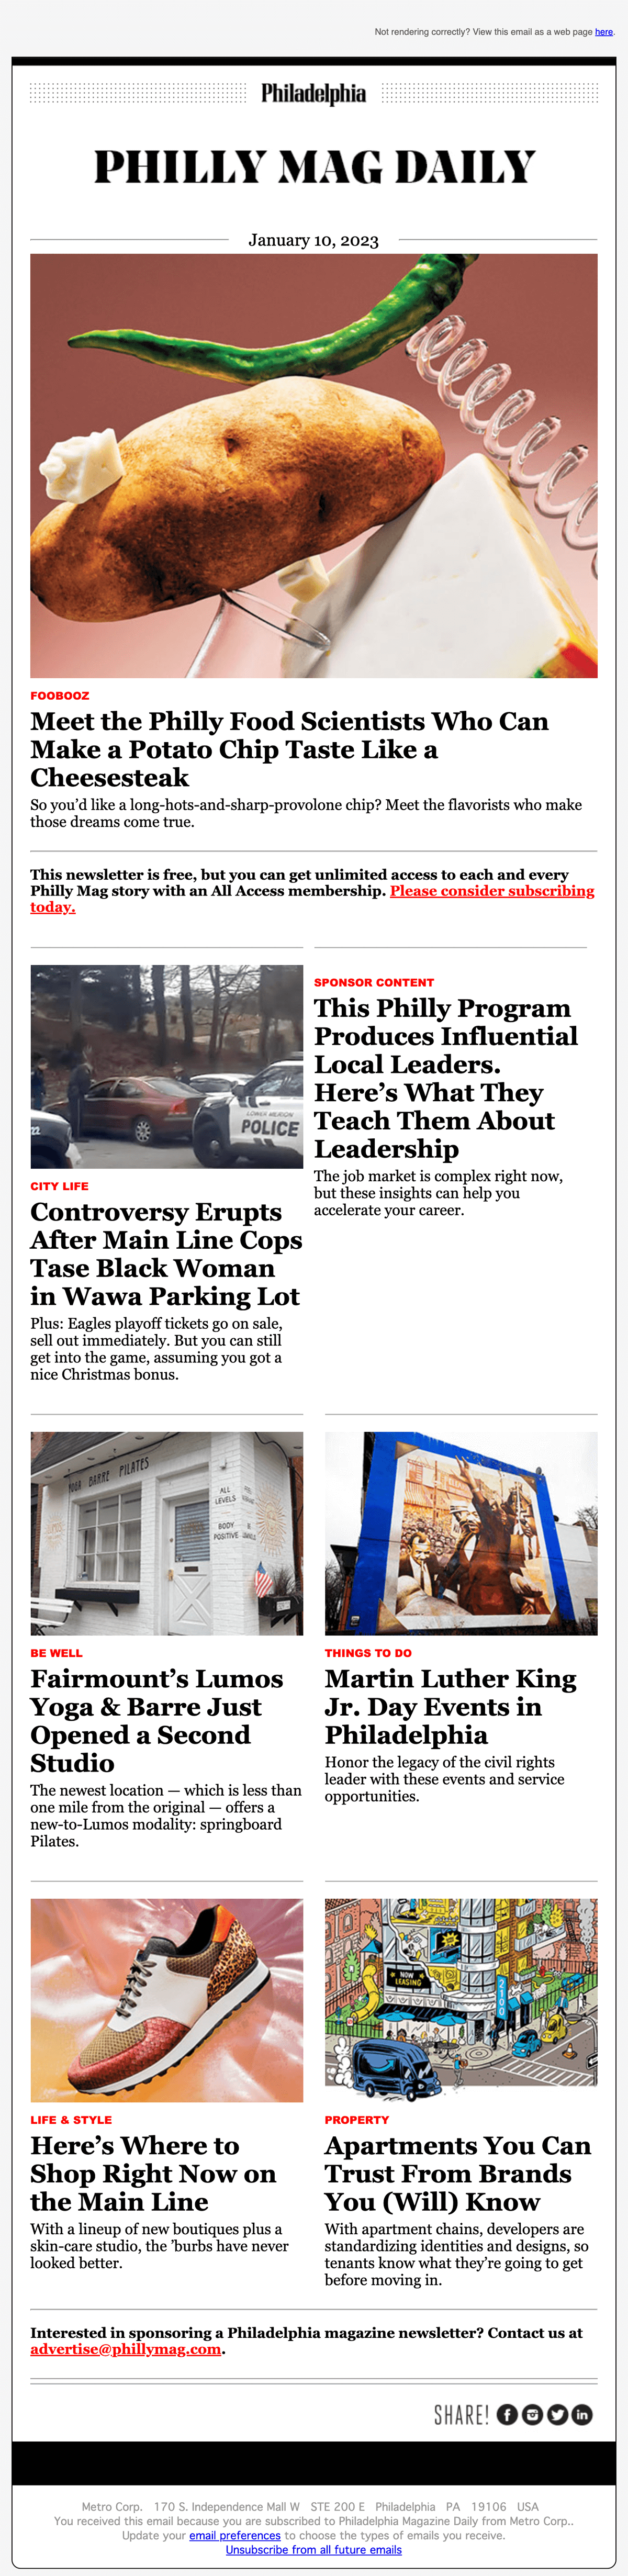 Philadelphia Magazine Daily Newsletter 2023